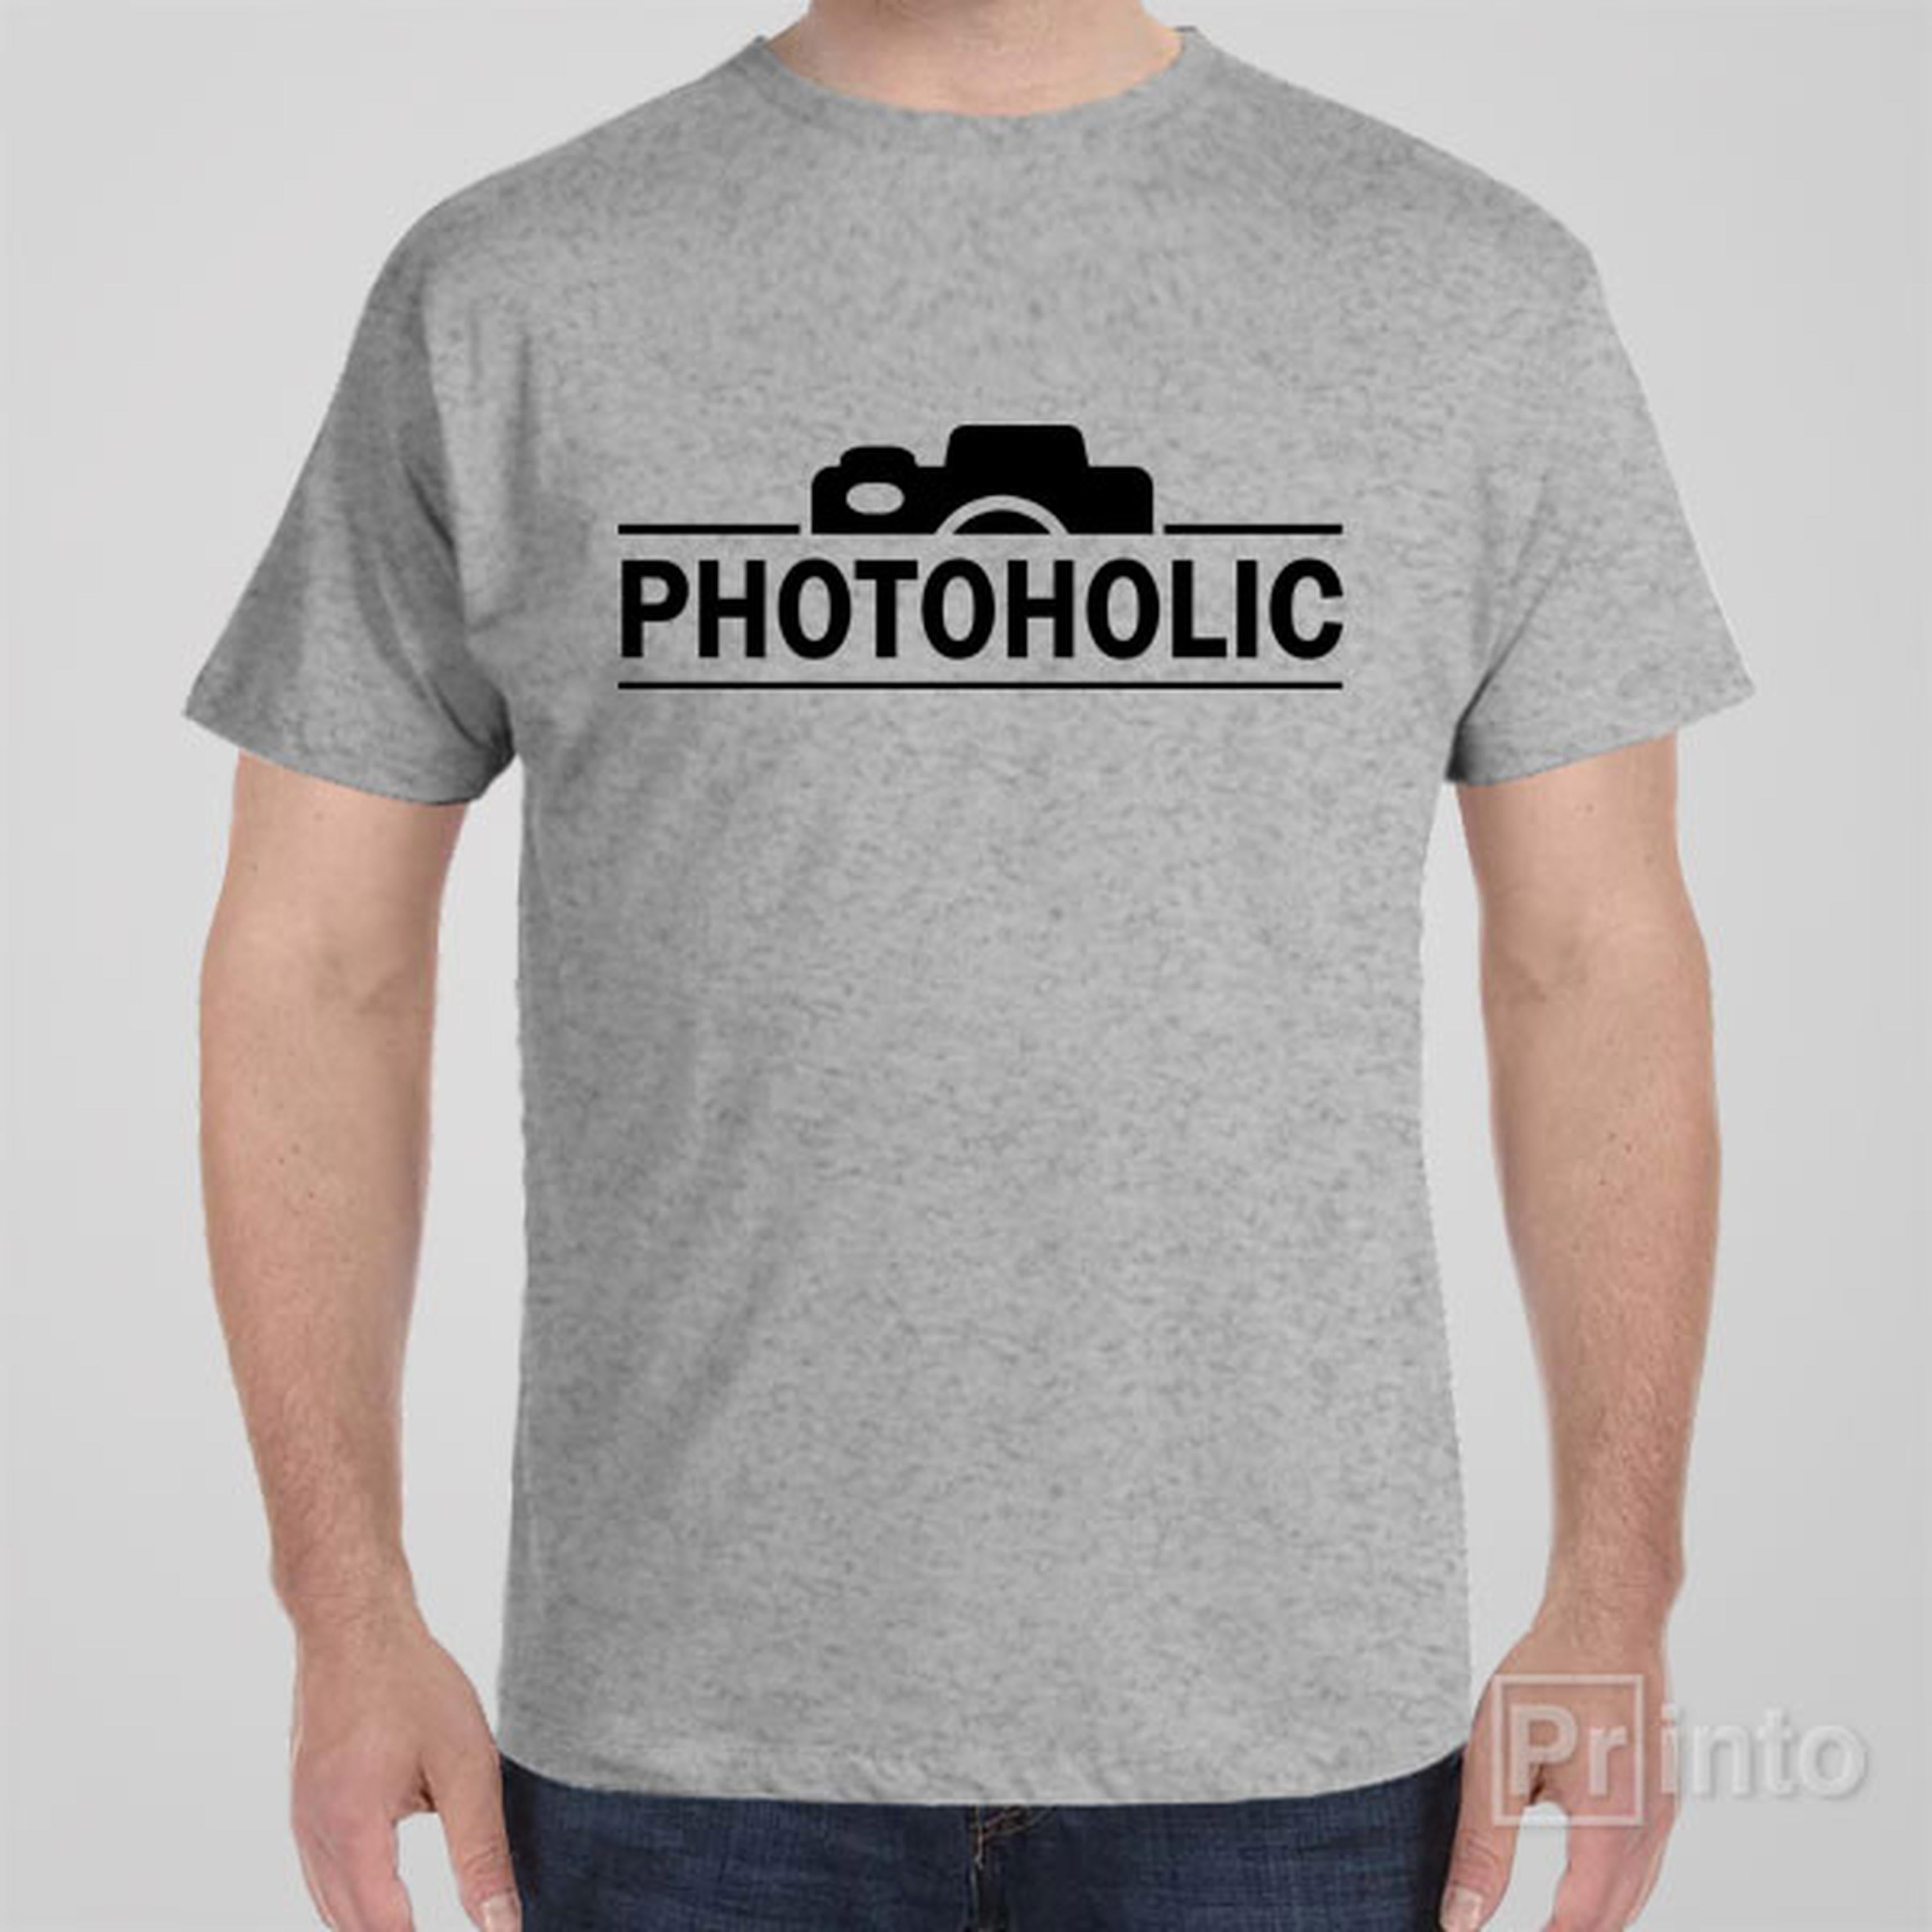 photoholic-t-shirt